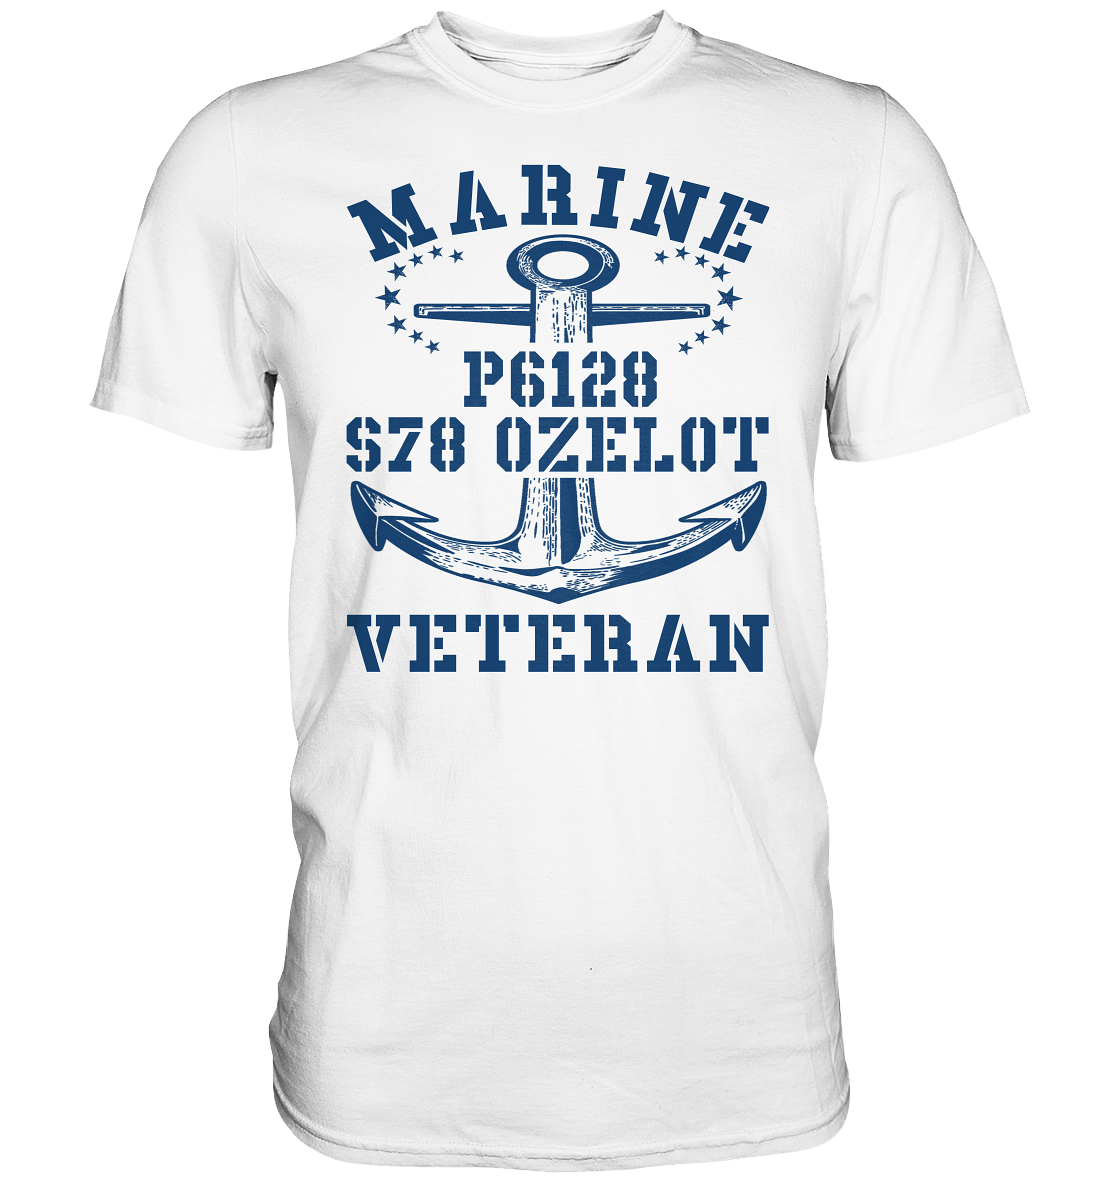 FK-Schnellboot P6128 OZELOT Marine Veteran - Premium Shirt